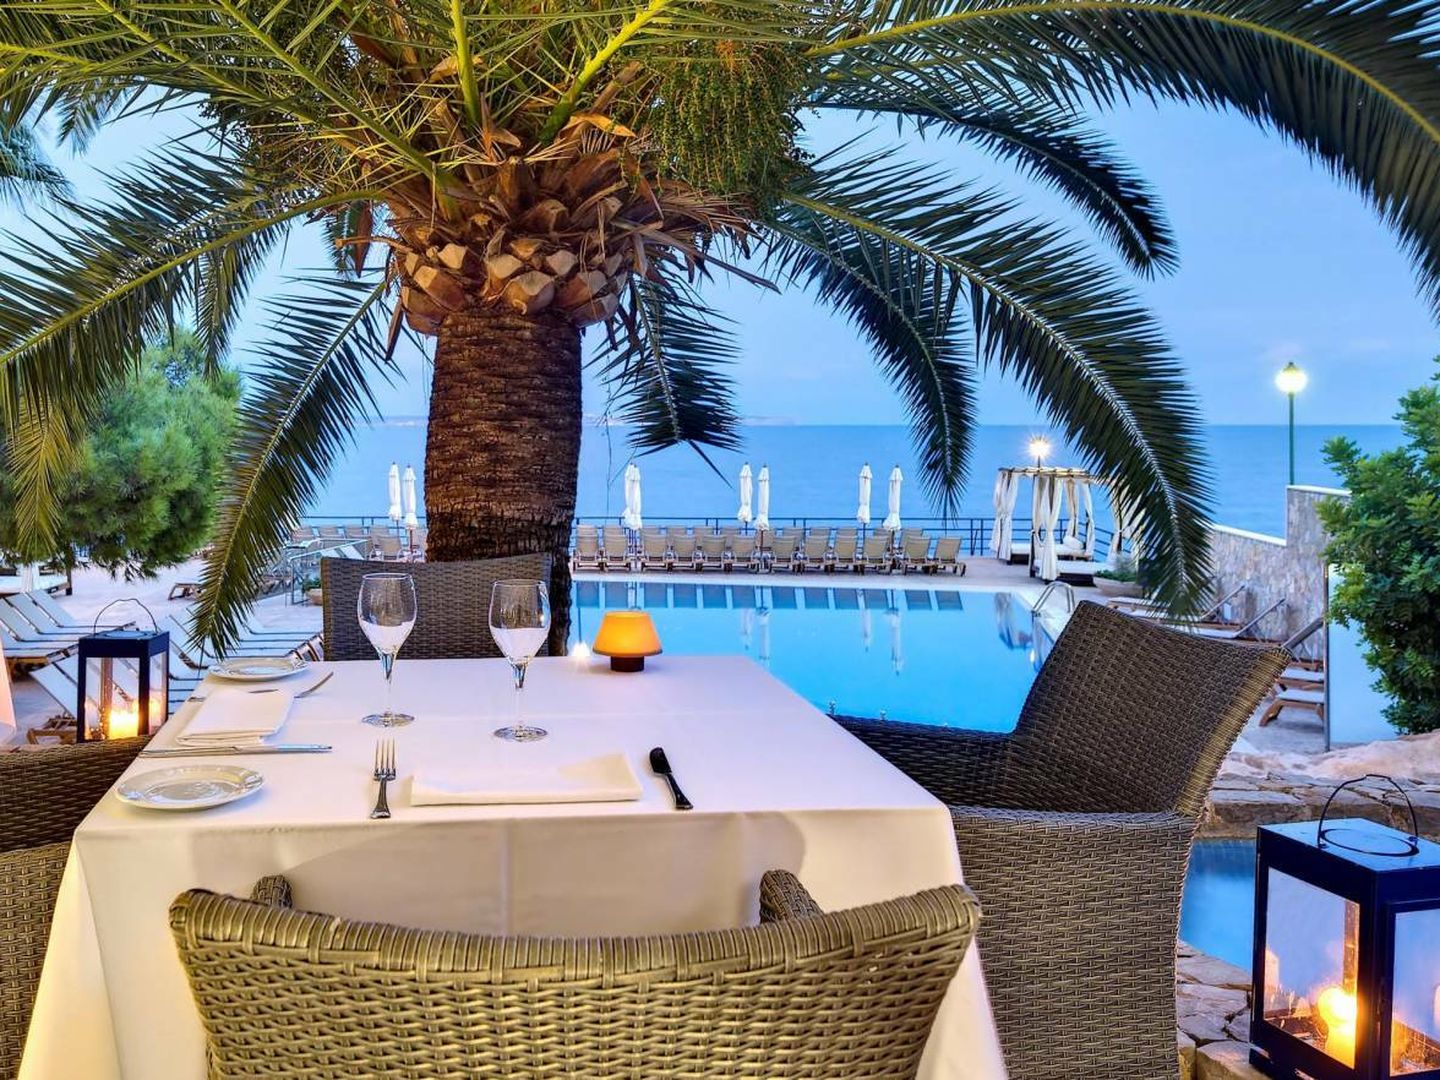 Comer o cenar con vistas y en Mallorca, puro lujo.